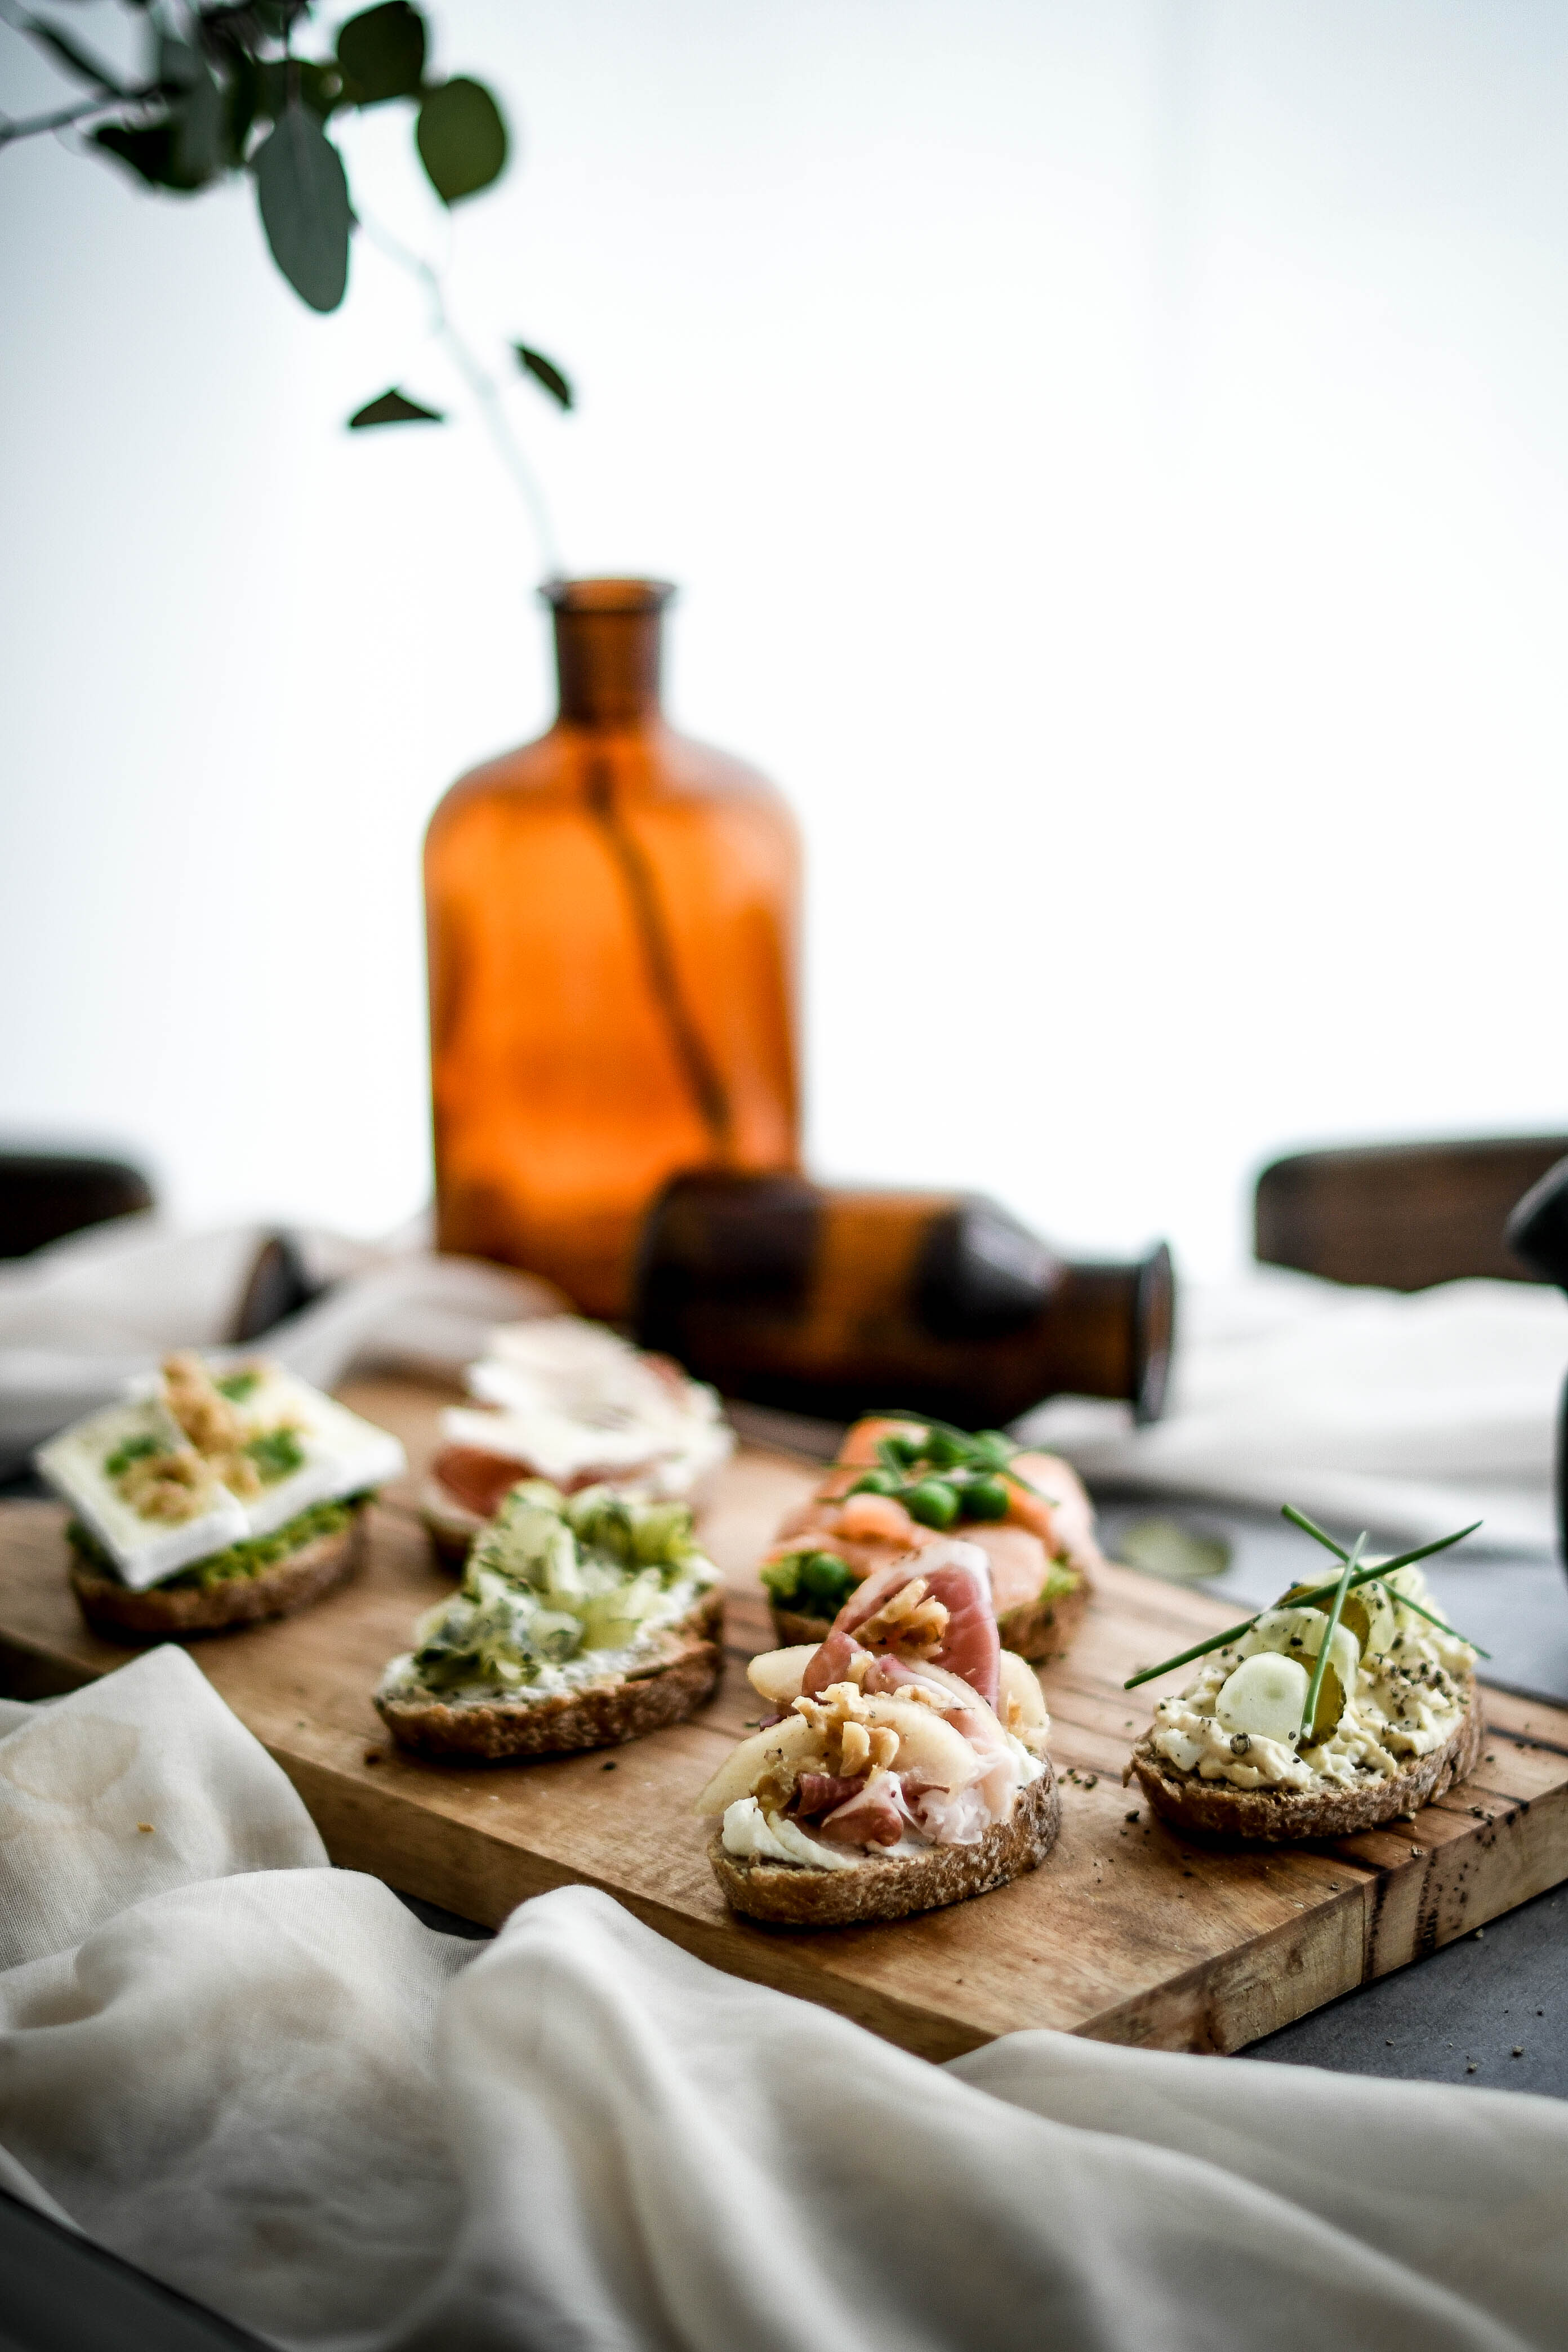 open sandwiches / obložené chlebíky photography